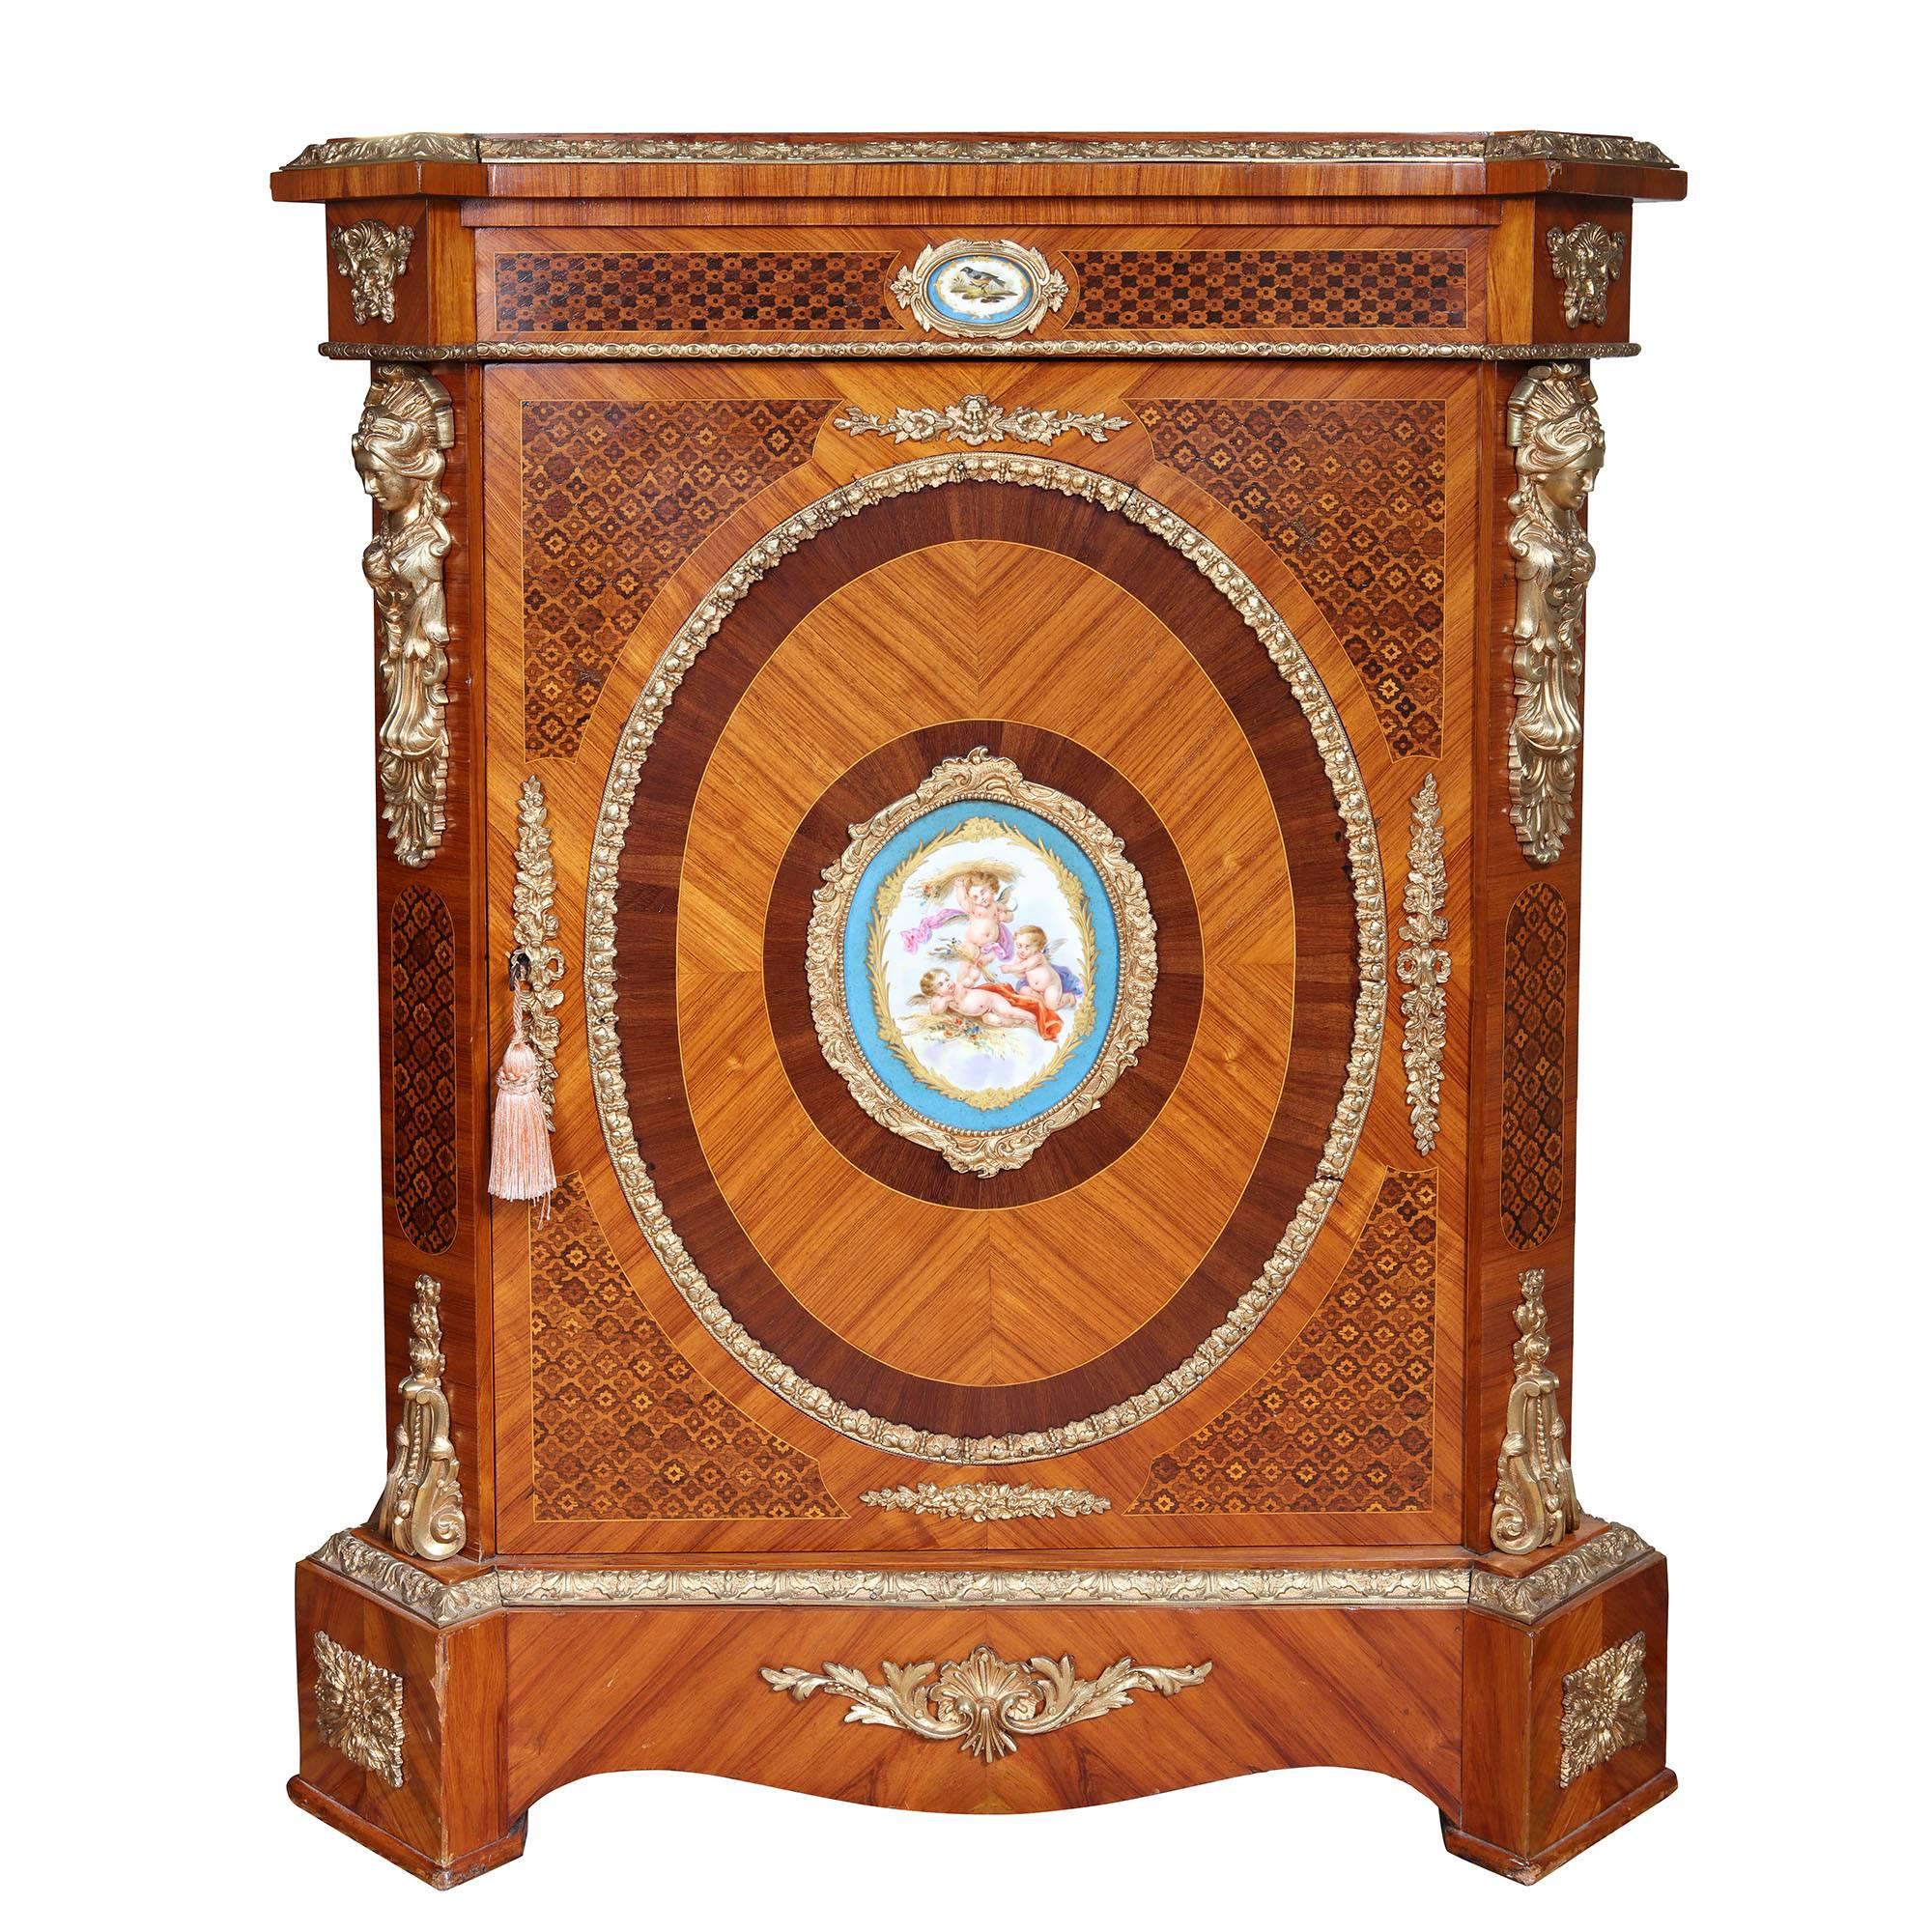 Un beau meuble d'appoint Napoléon III du XIXe siècle avec des panneaux de marqueterie, des côtés assortis de livres avec des montures en bronze doré de figures classiques et de feuillages. Le tiroir supérieur et le panneau central avec des panneaux